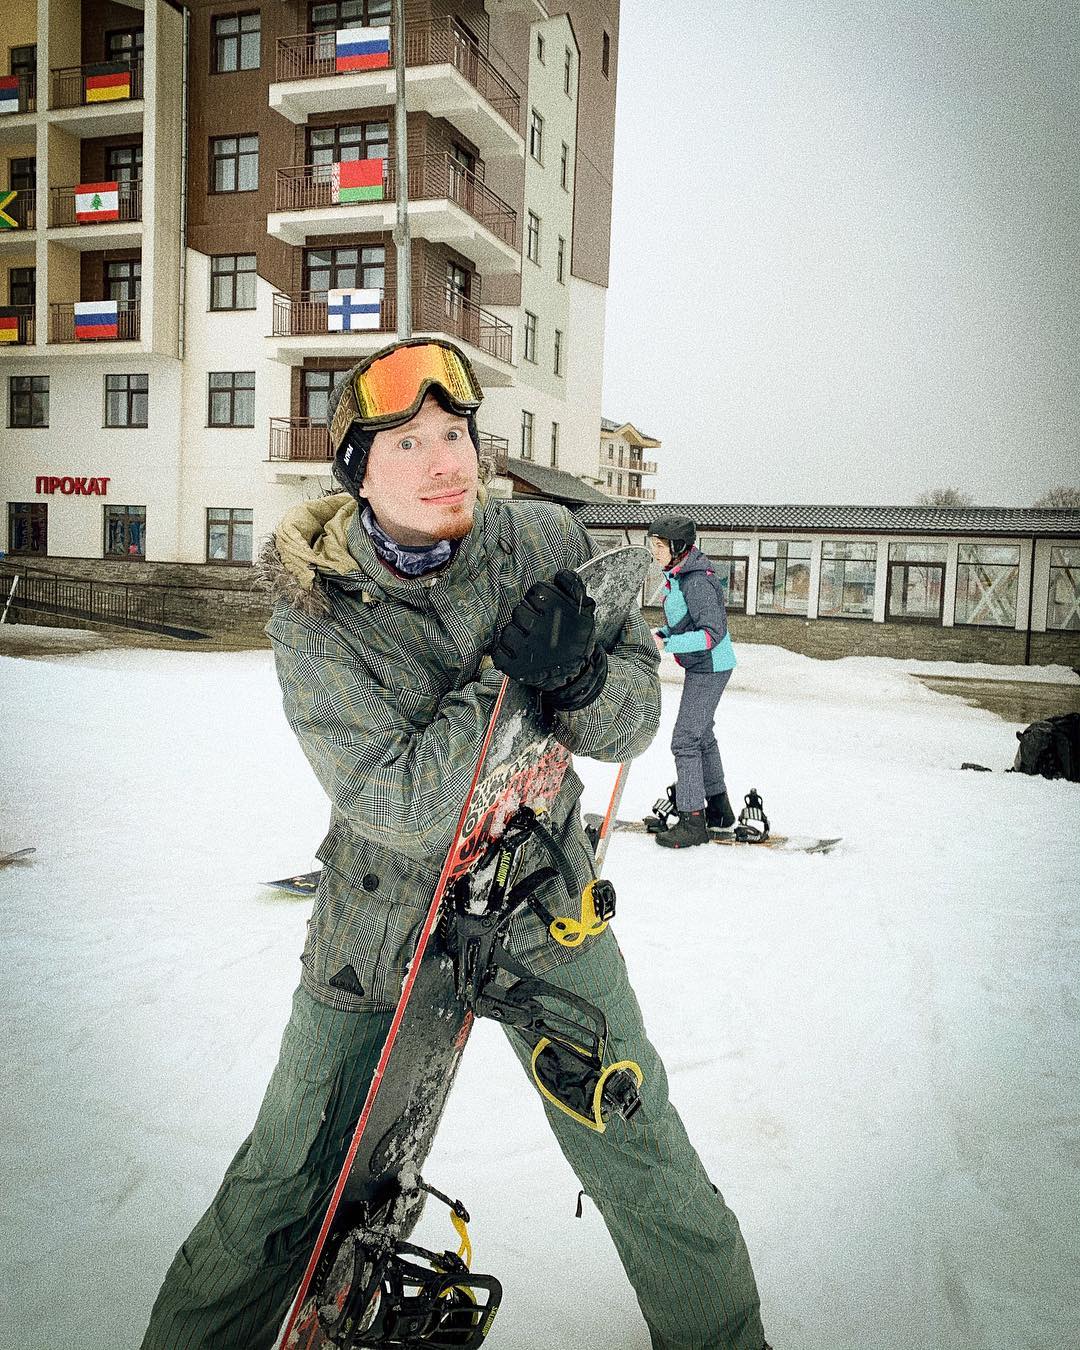 Куда поехать кататься на лыжах? Фото: официальная страница Никиты Преснякова в инстаграме*